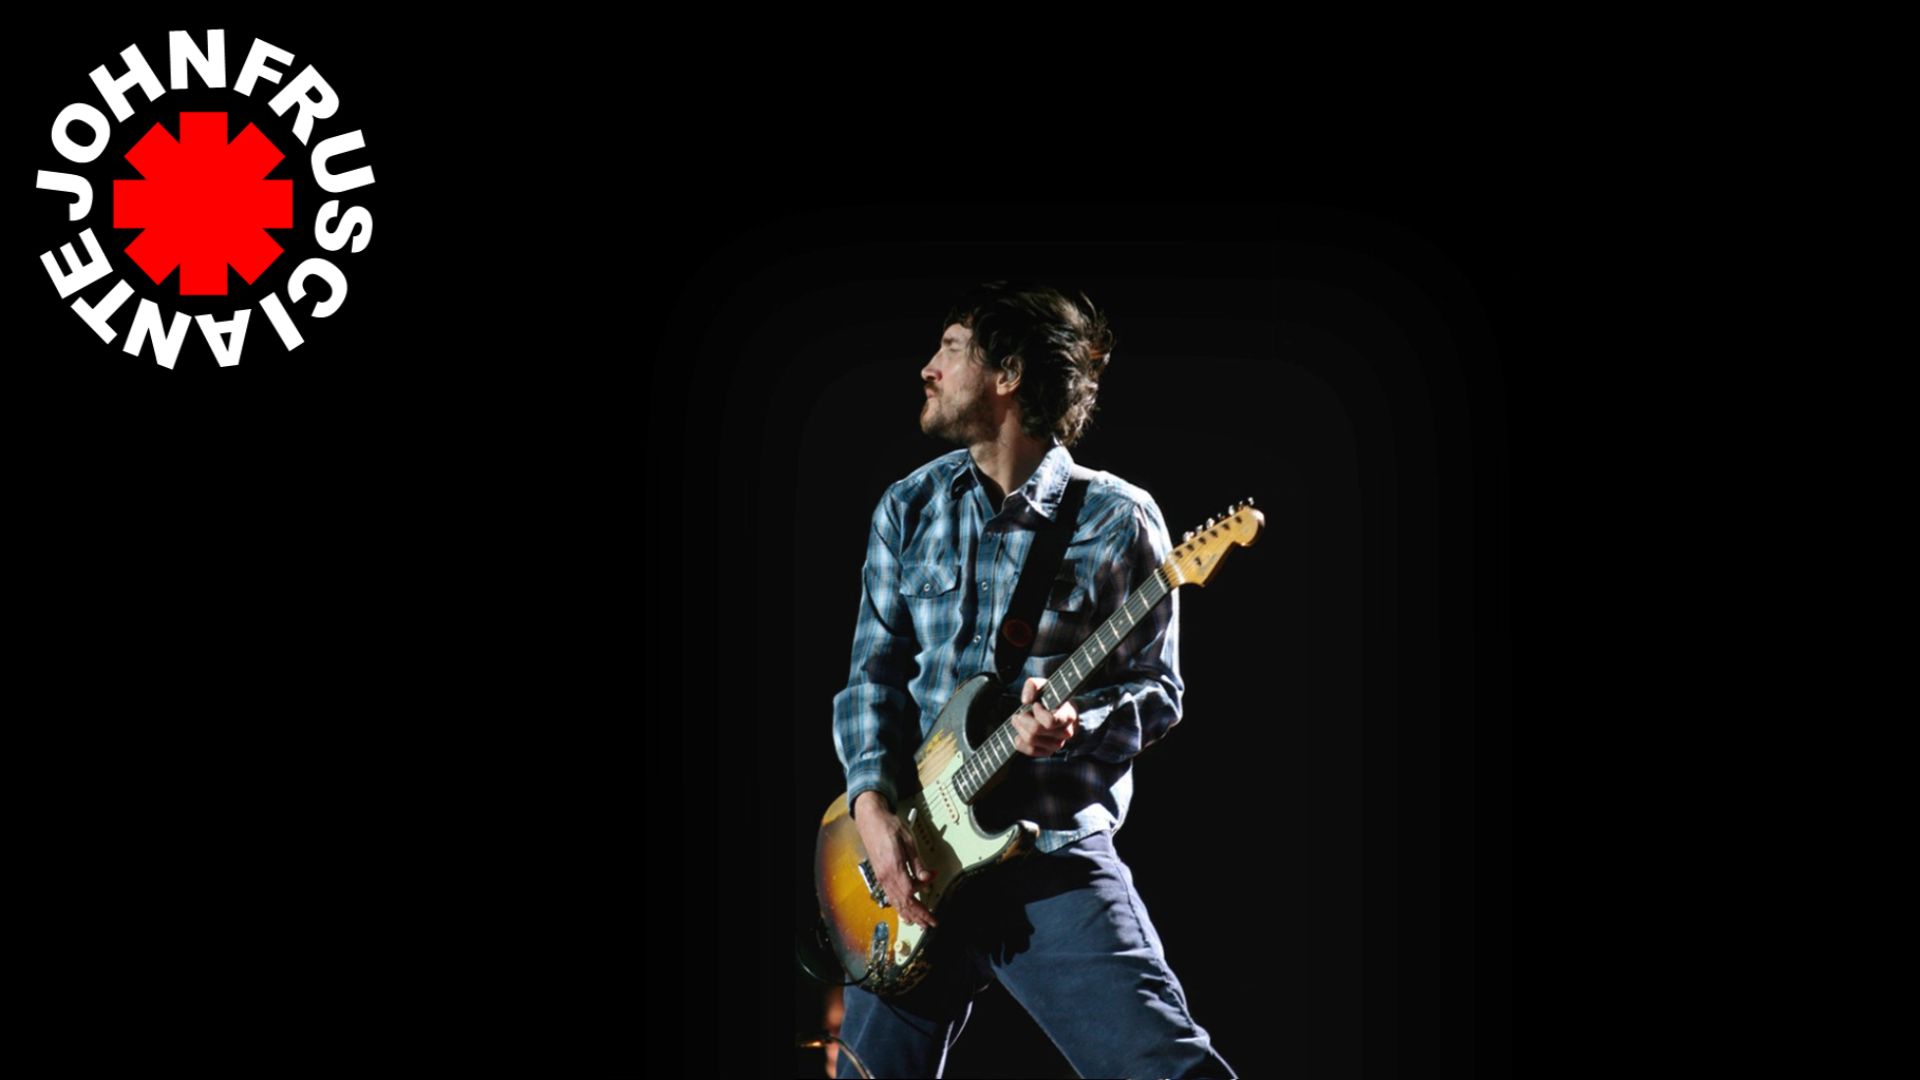 Télécharger des fonds d'écran John Frusciante HD